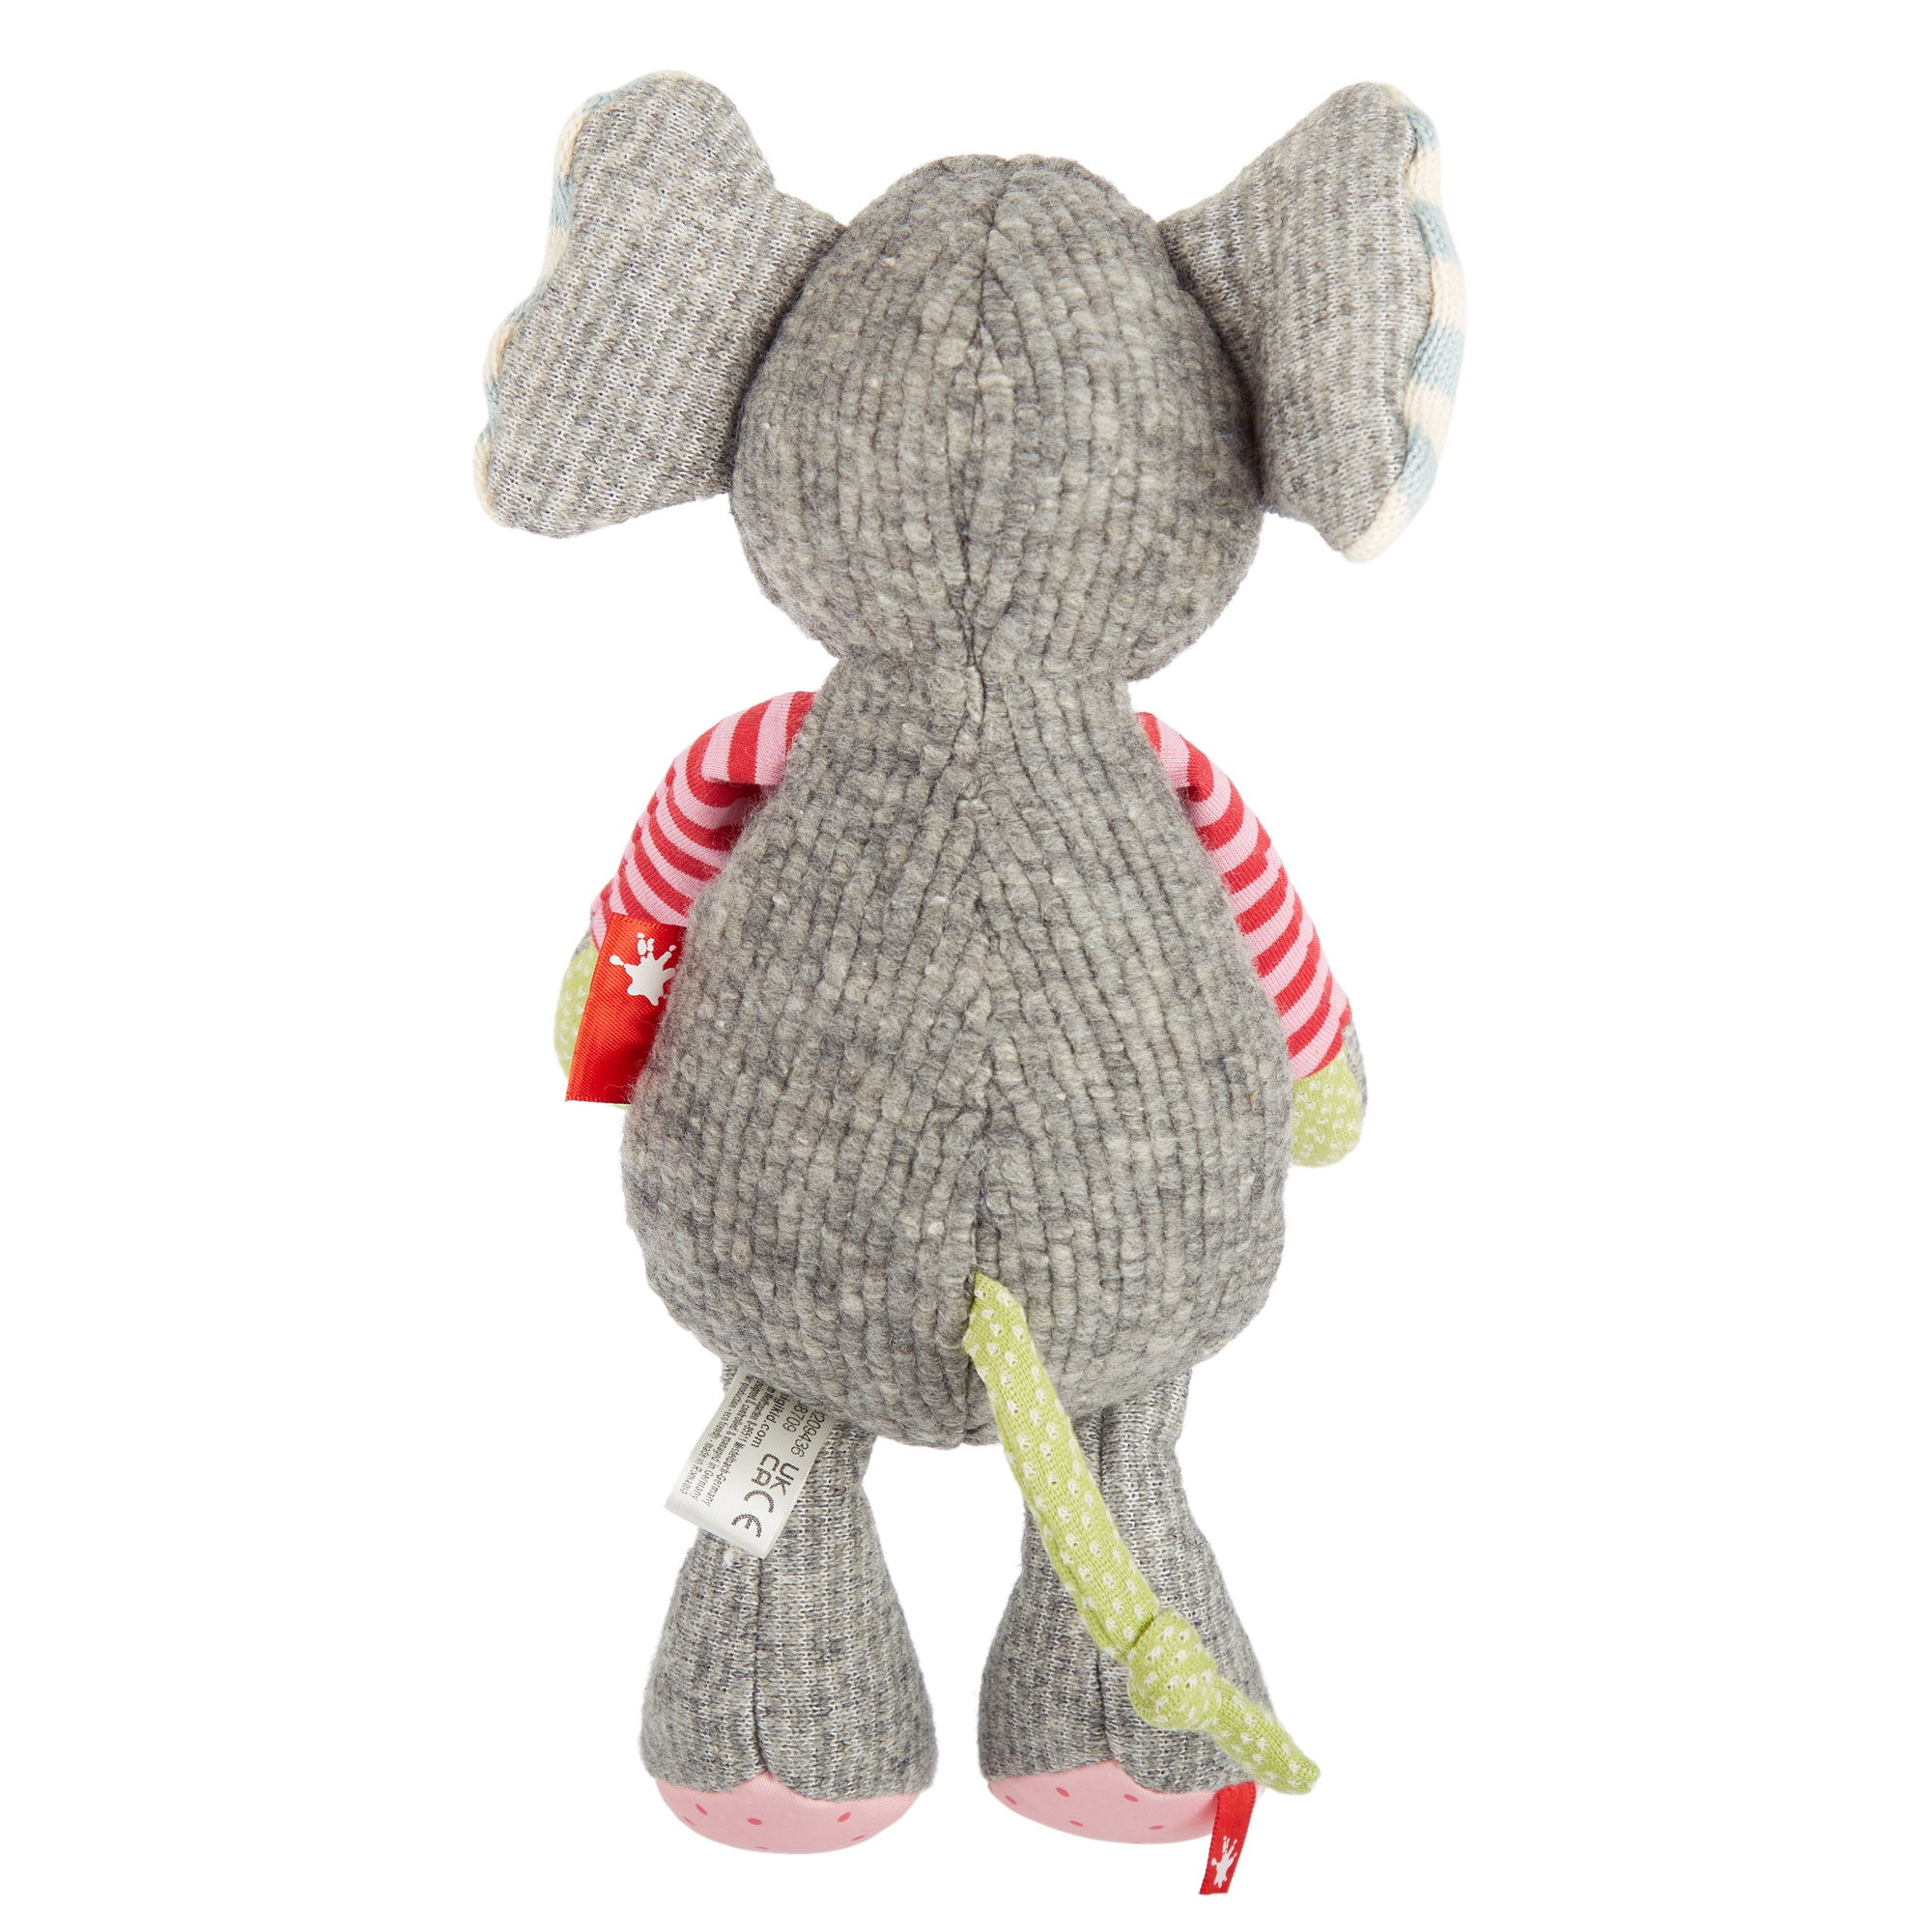 Sweet soft toy elephant girl